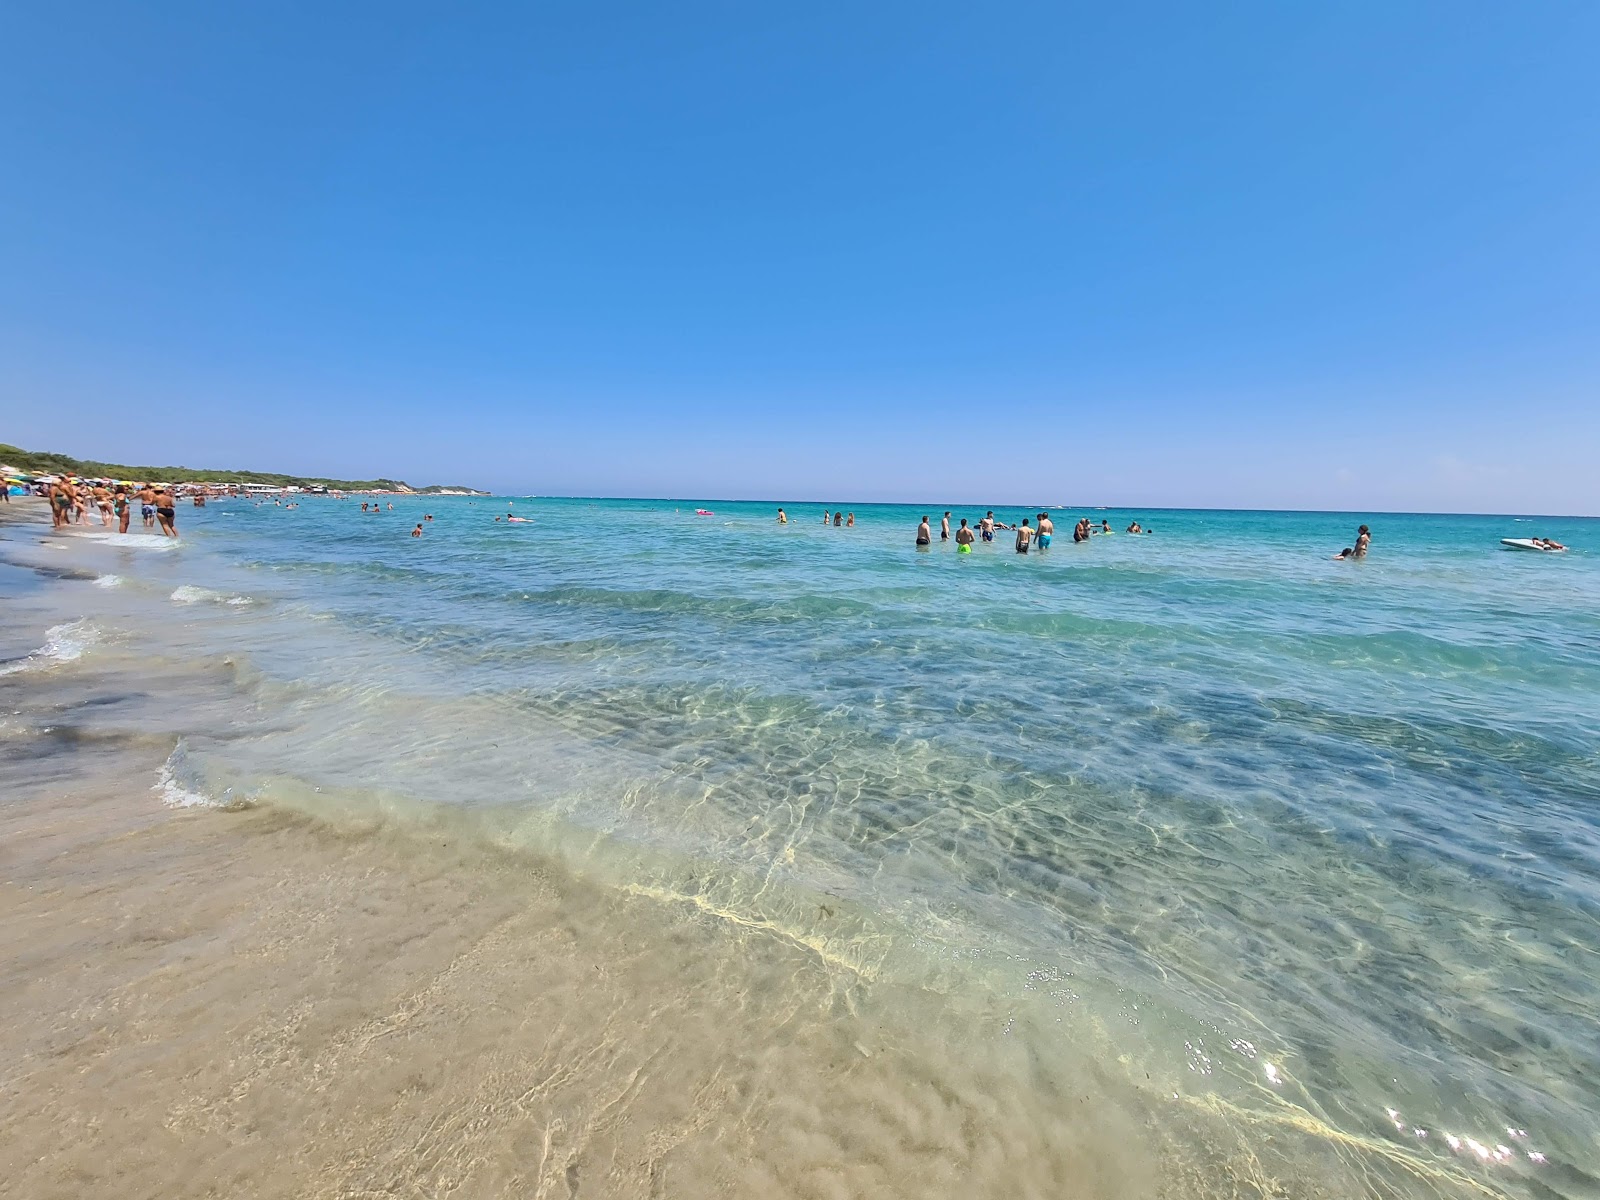 Foto av Spiaggia Laghi Alimini med ljus fin sand yta